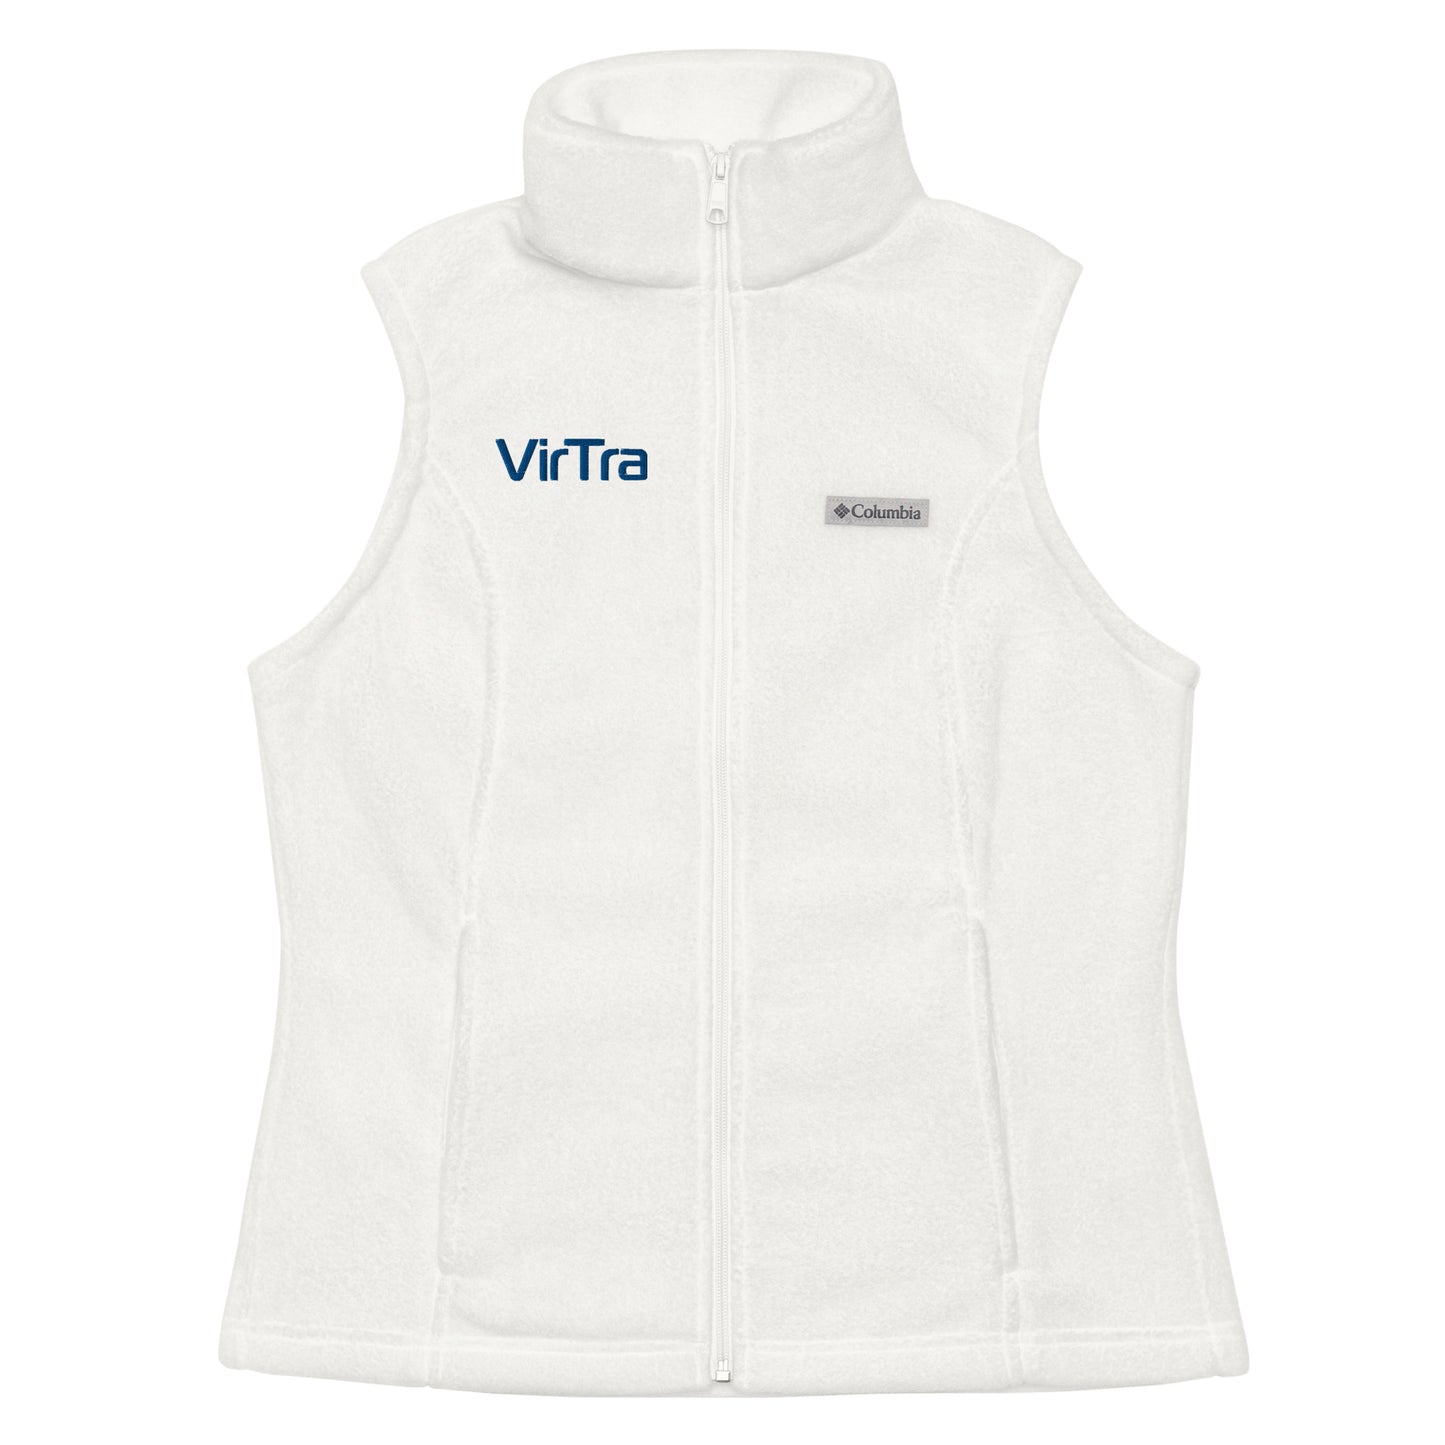 VirTra Columbia | Women's Zip-up Vest